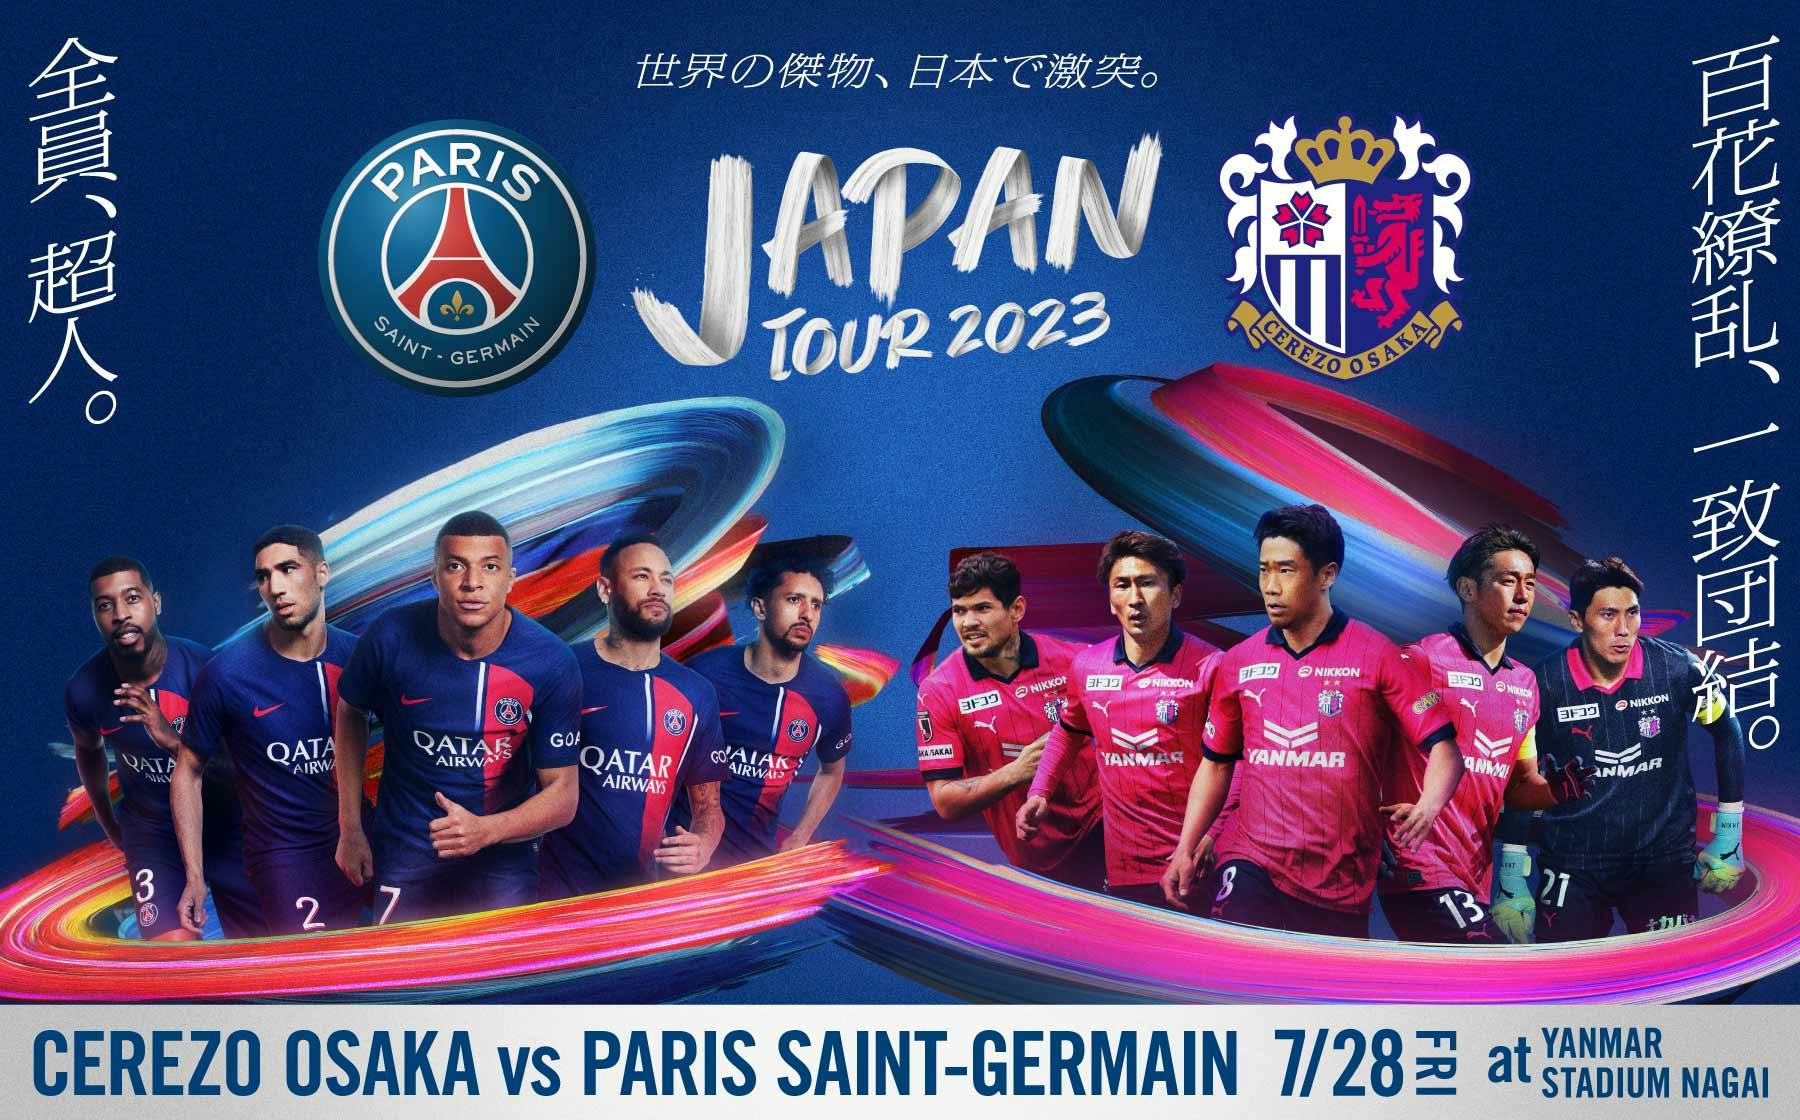 DAY 02 Paris SaintGermain JAPAN TOUR 2023